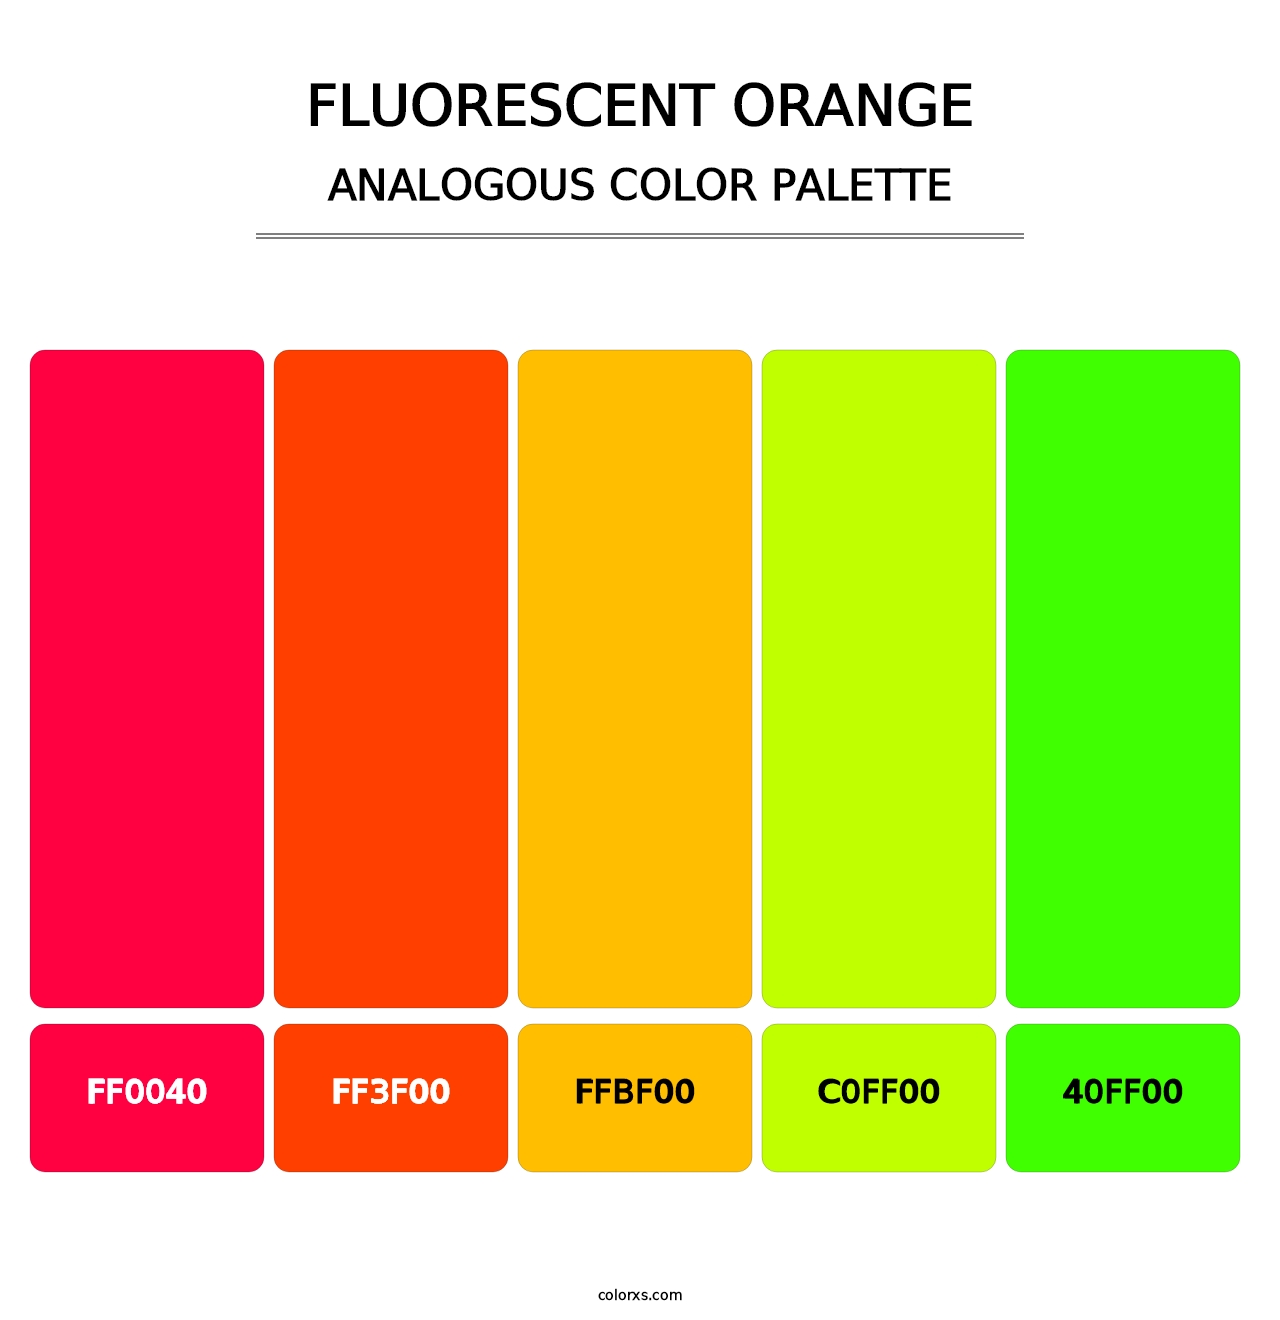 Fluorescent Orange - Analogous Color Palette